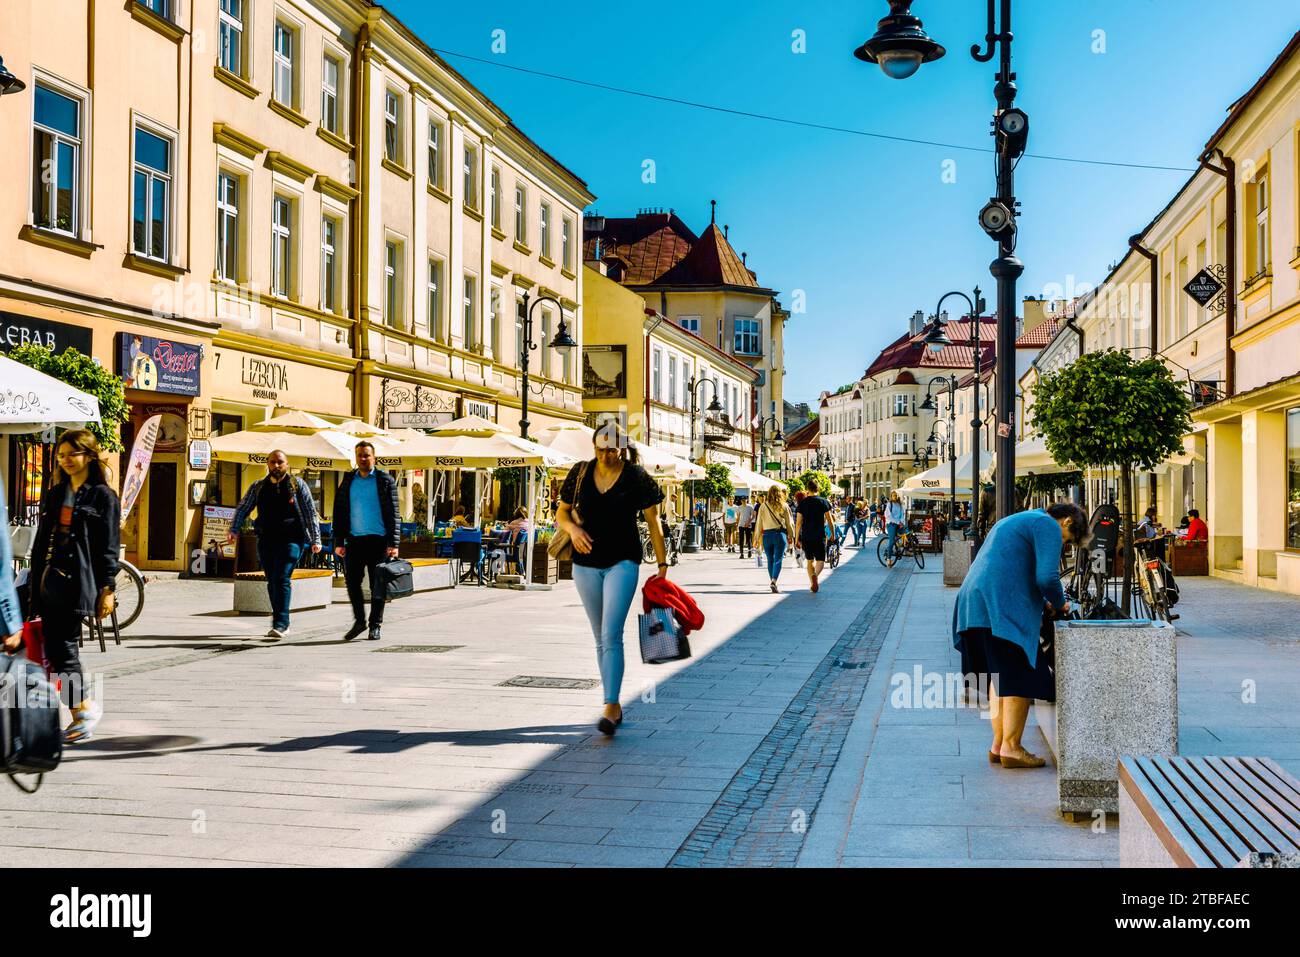 Blick auf ein Fragment einer wunderschönen Straße in der Altstadt, Krosno, Polen. Stockfoto